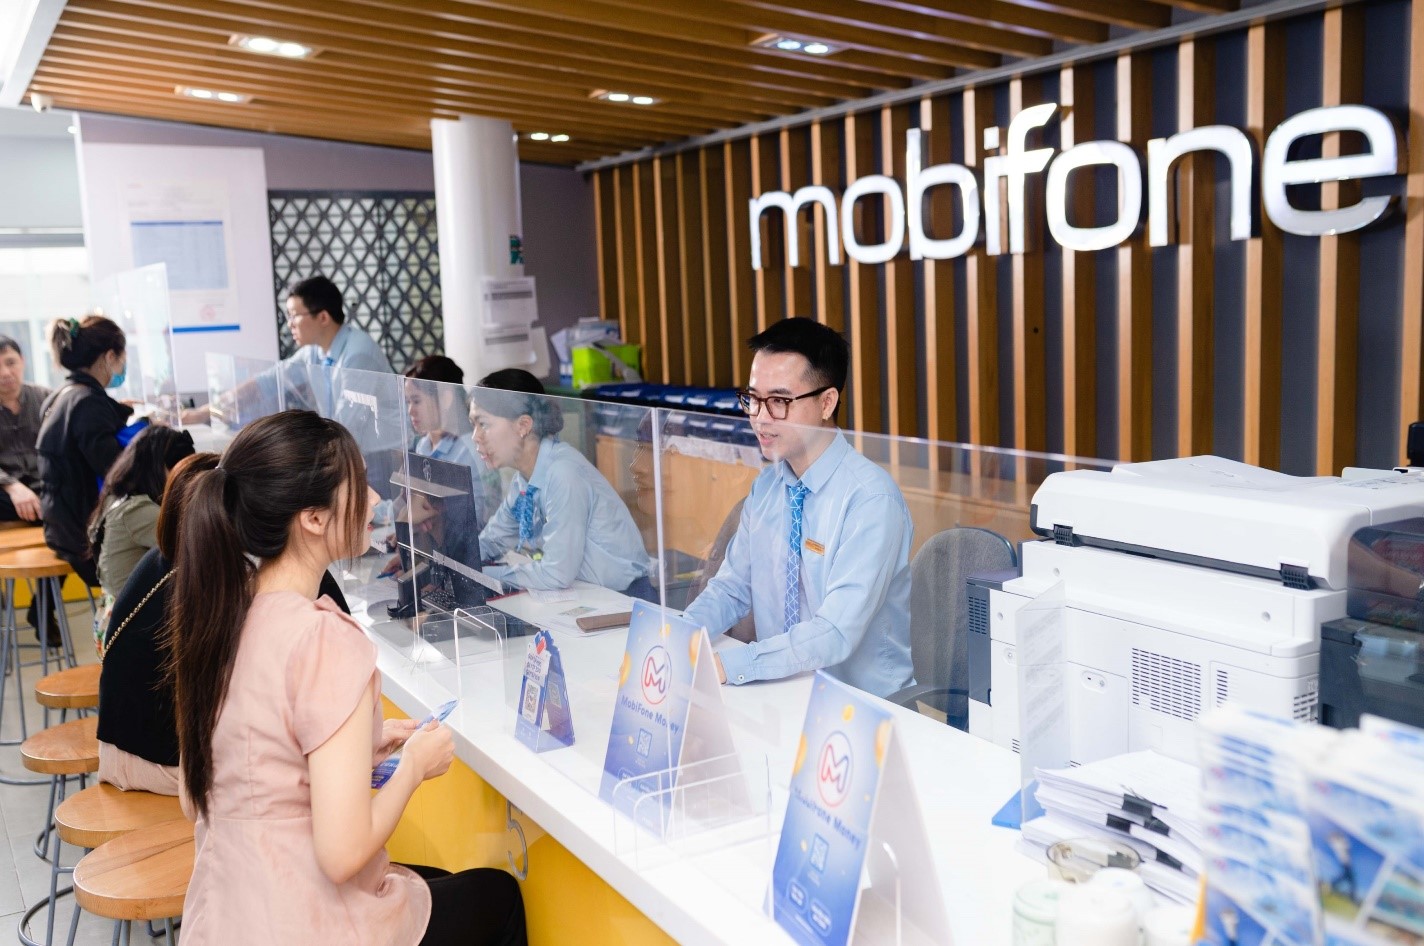 MobiFone hướng tới dẫn đầu xu thế chuyển đổi số, phát triển sản phẩm dịch vụ số dựa trên hạ tầng số, nhằm gia tăng lợi ích và trải nghiệm khách hàng.